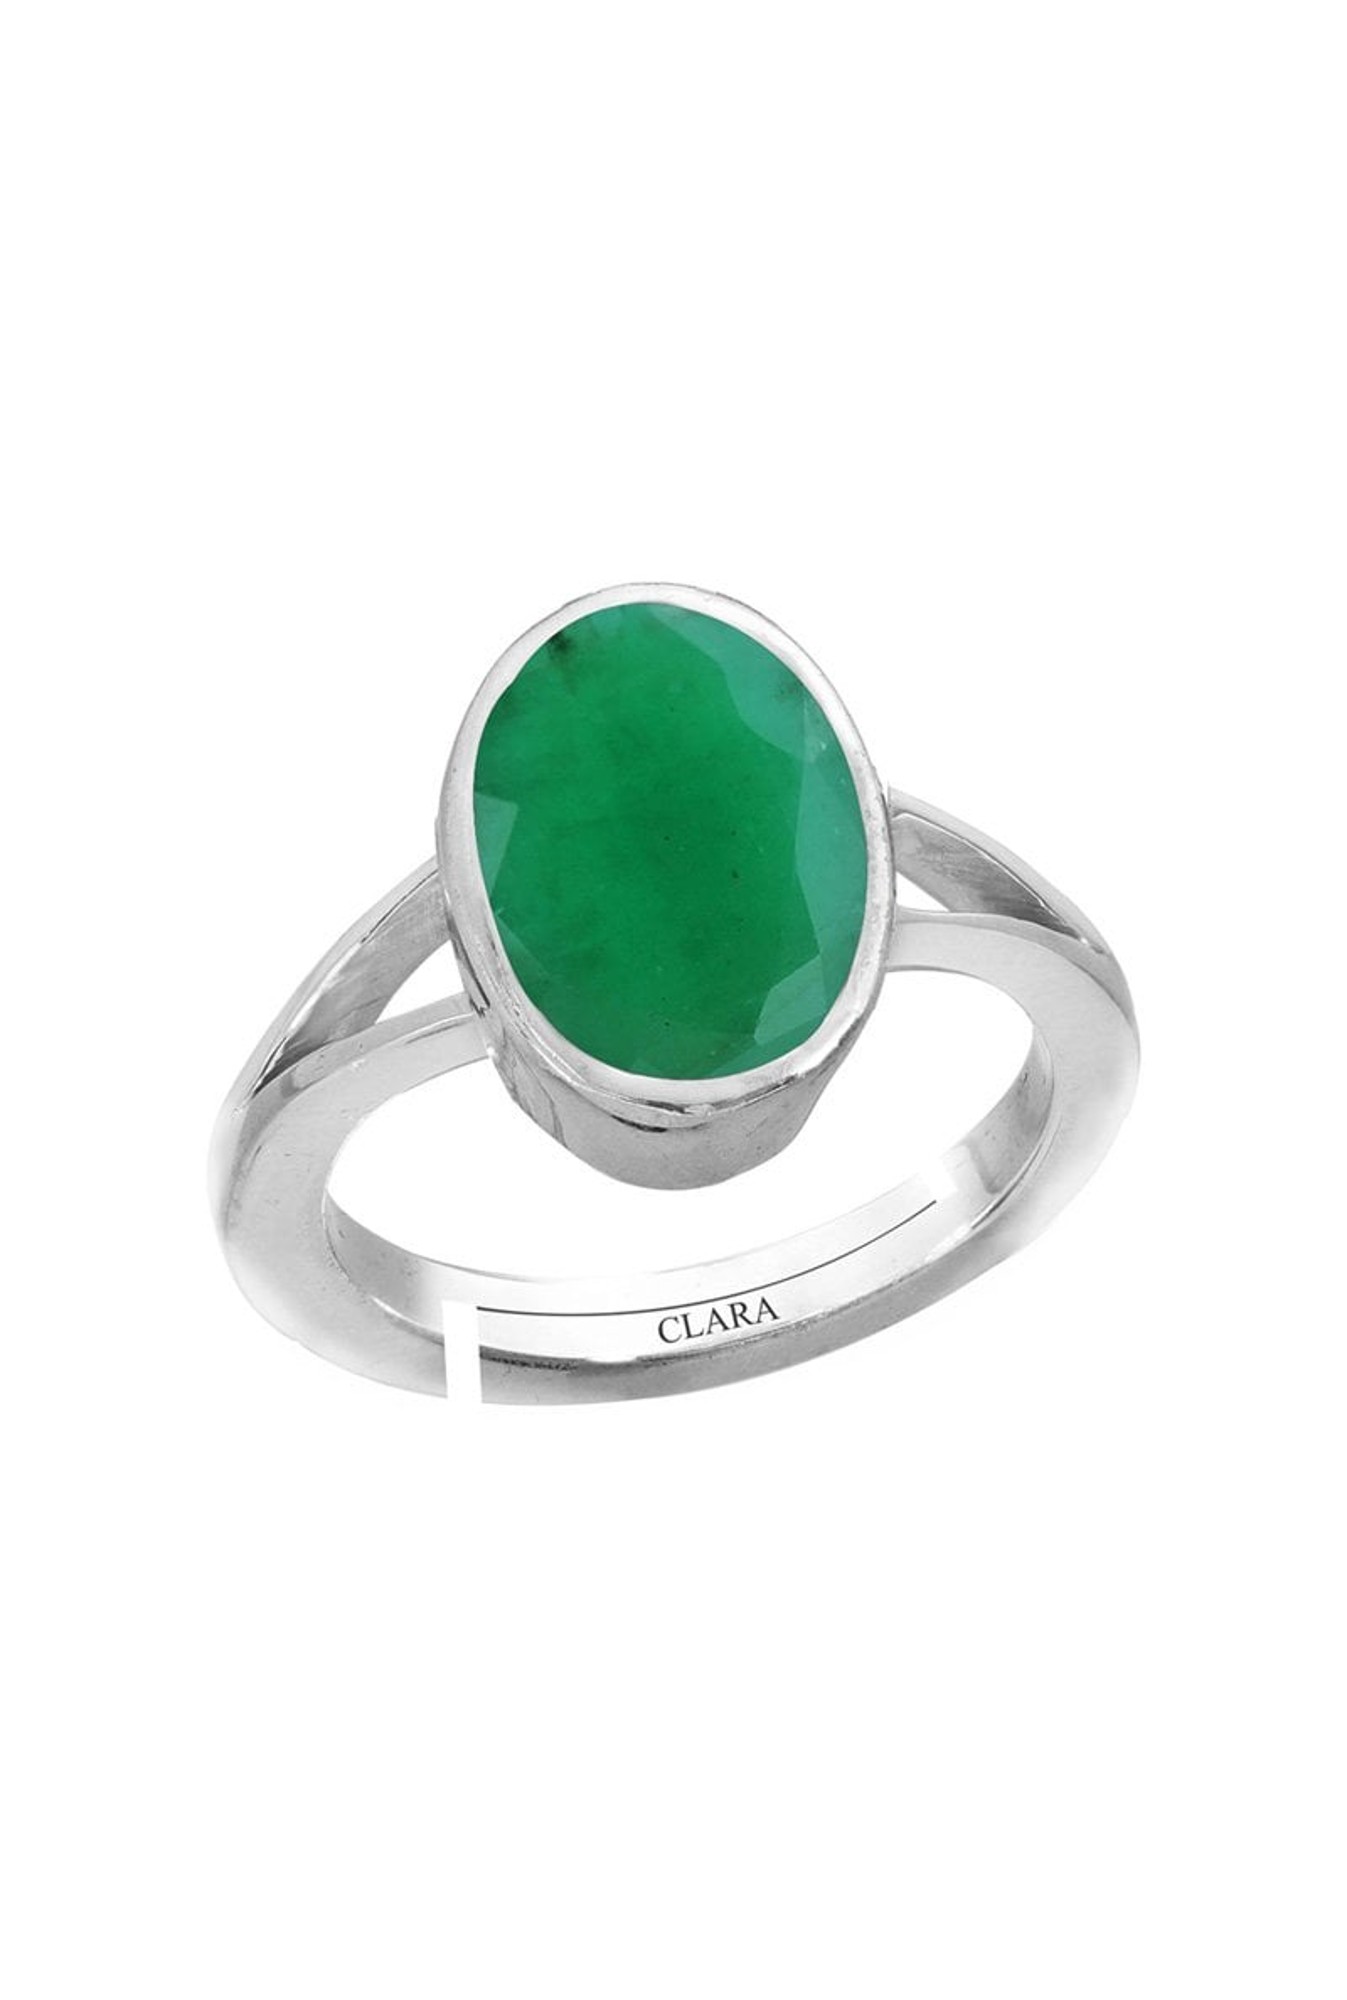 Emerald Ring, Handmade Panna Gemstone Ring - Shraddha Shree Gems